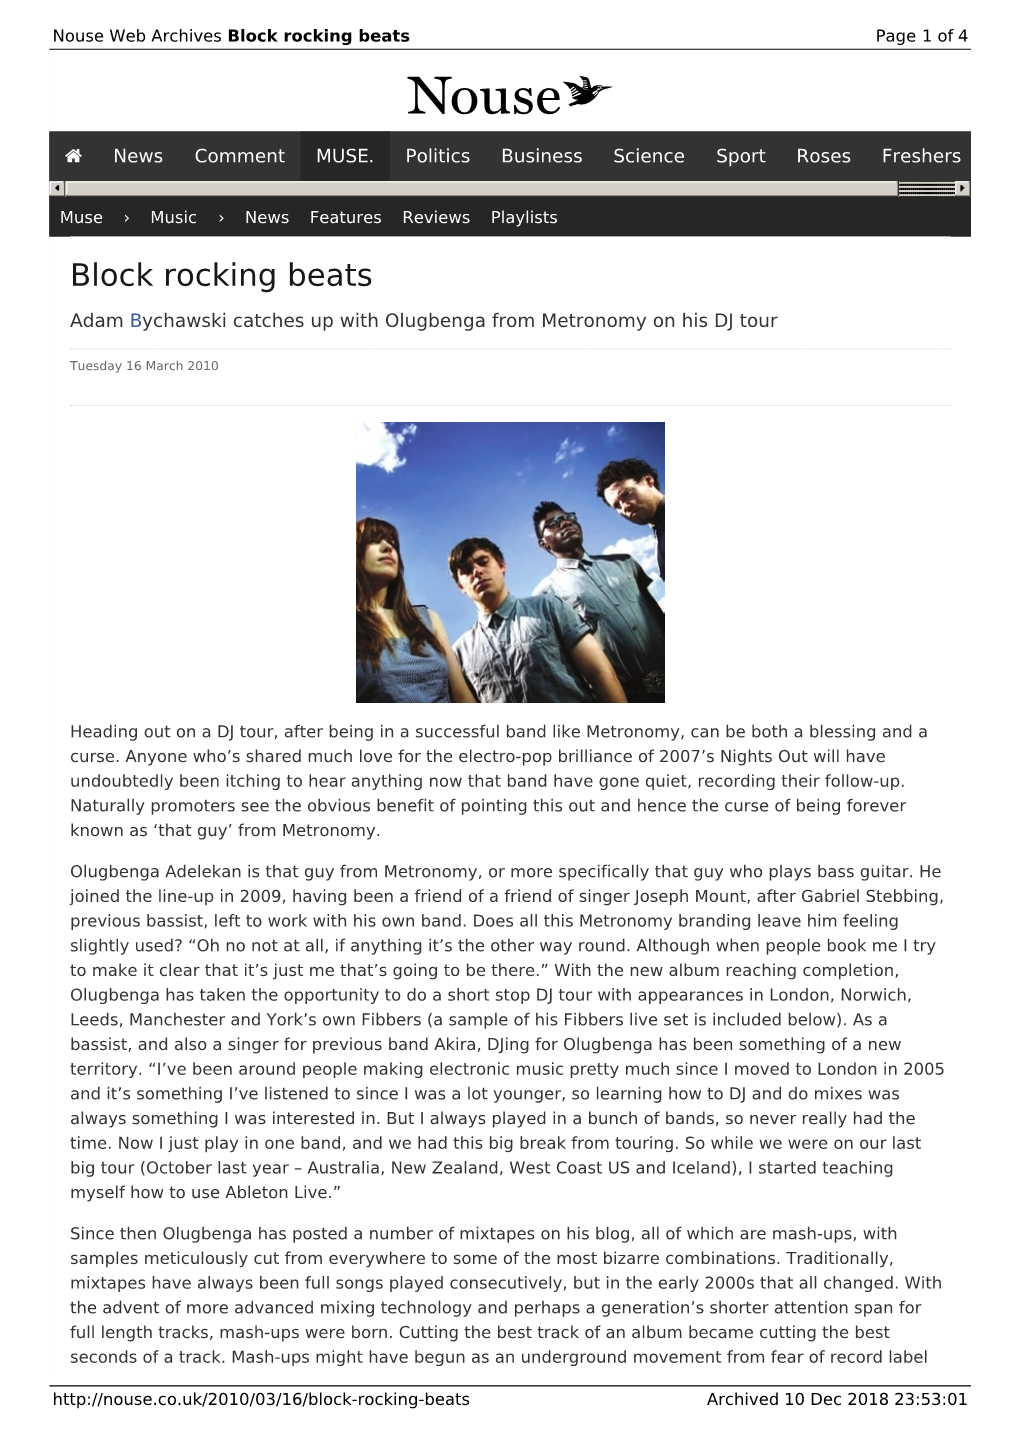 Block Rocking Beats | Nouse